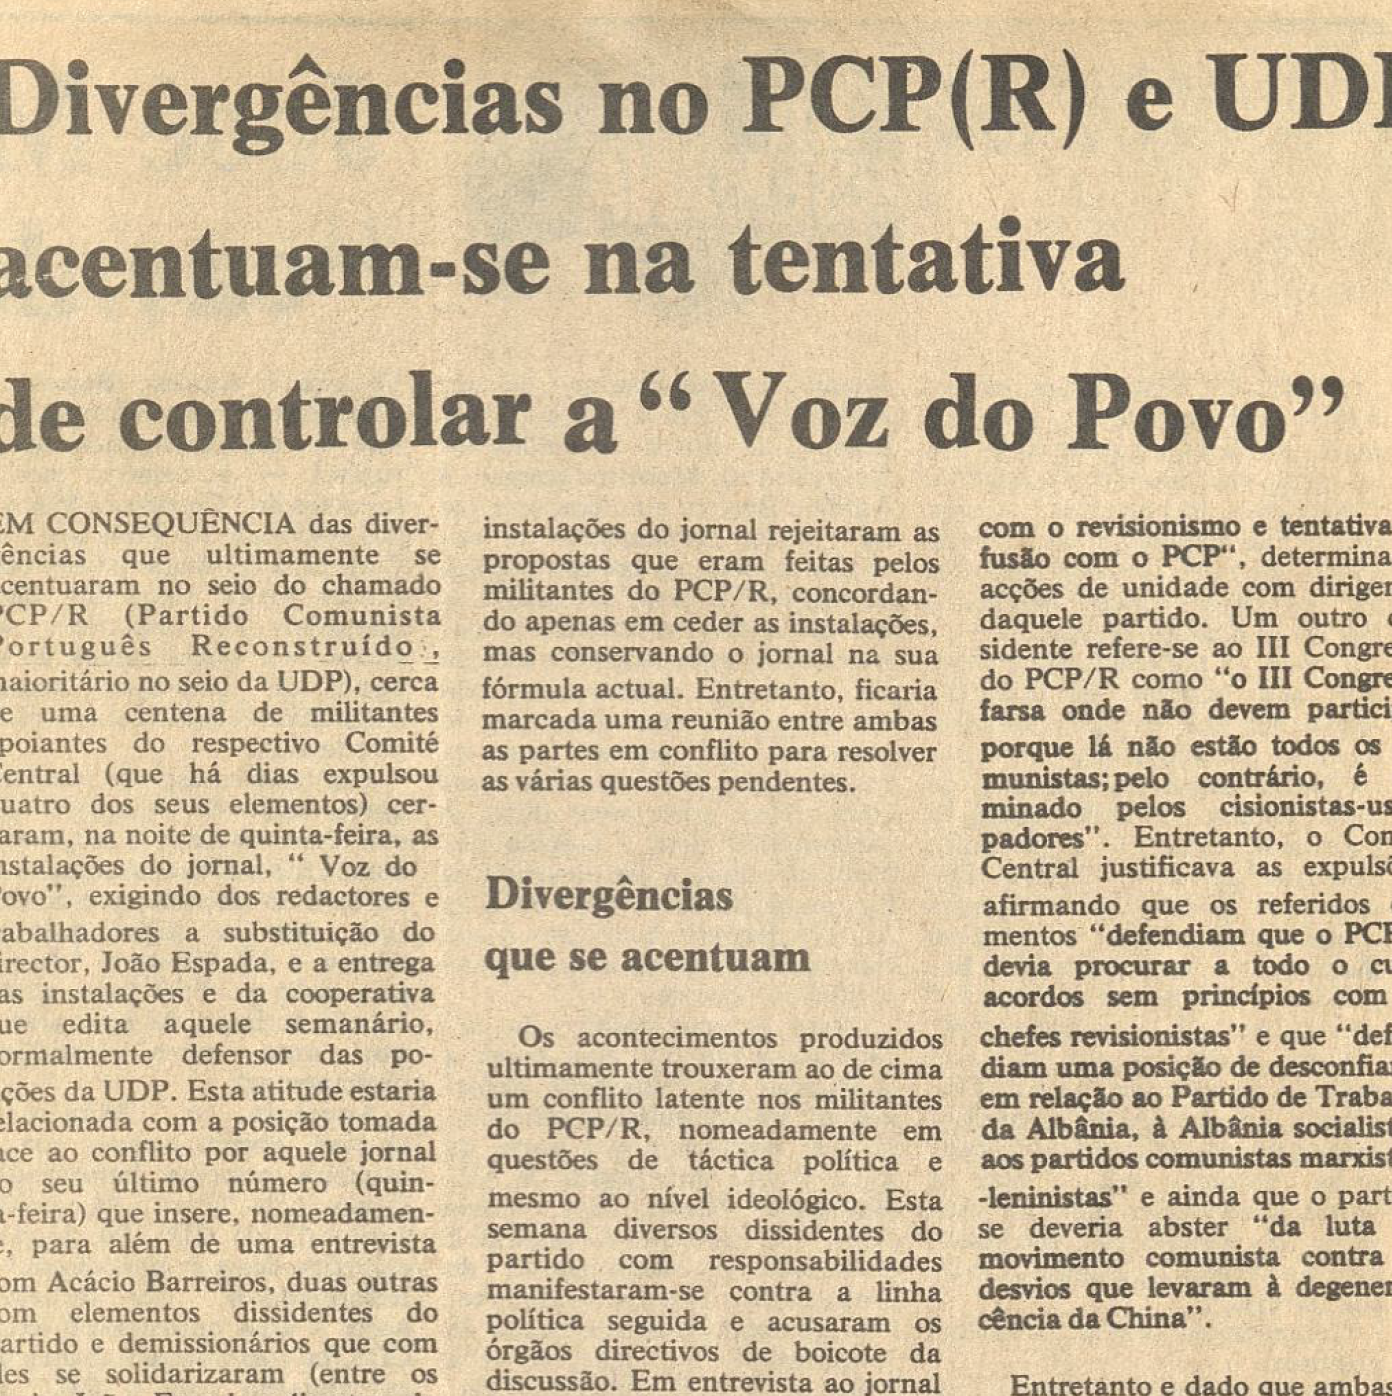 "Divergência no PCP(R) e UDP acentuam-se na tentativa de controlar a Voz do Povo"